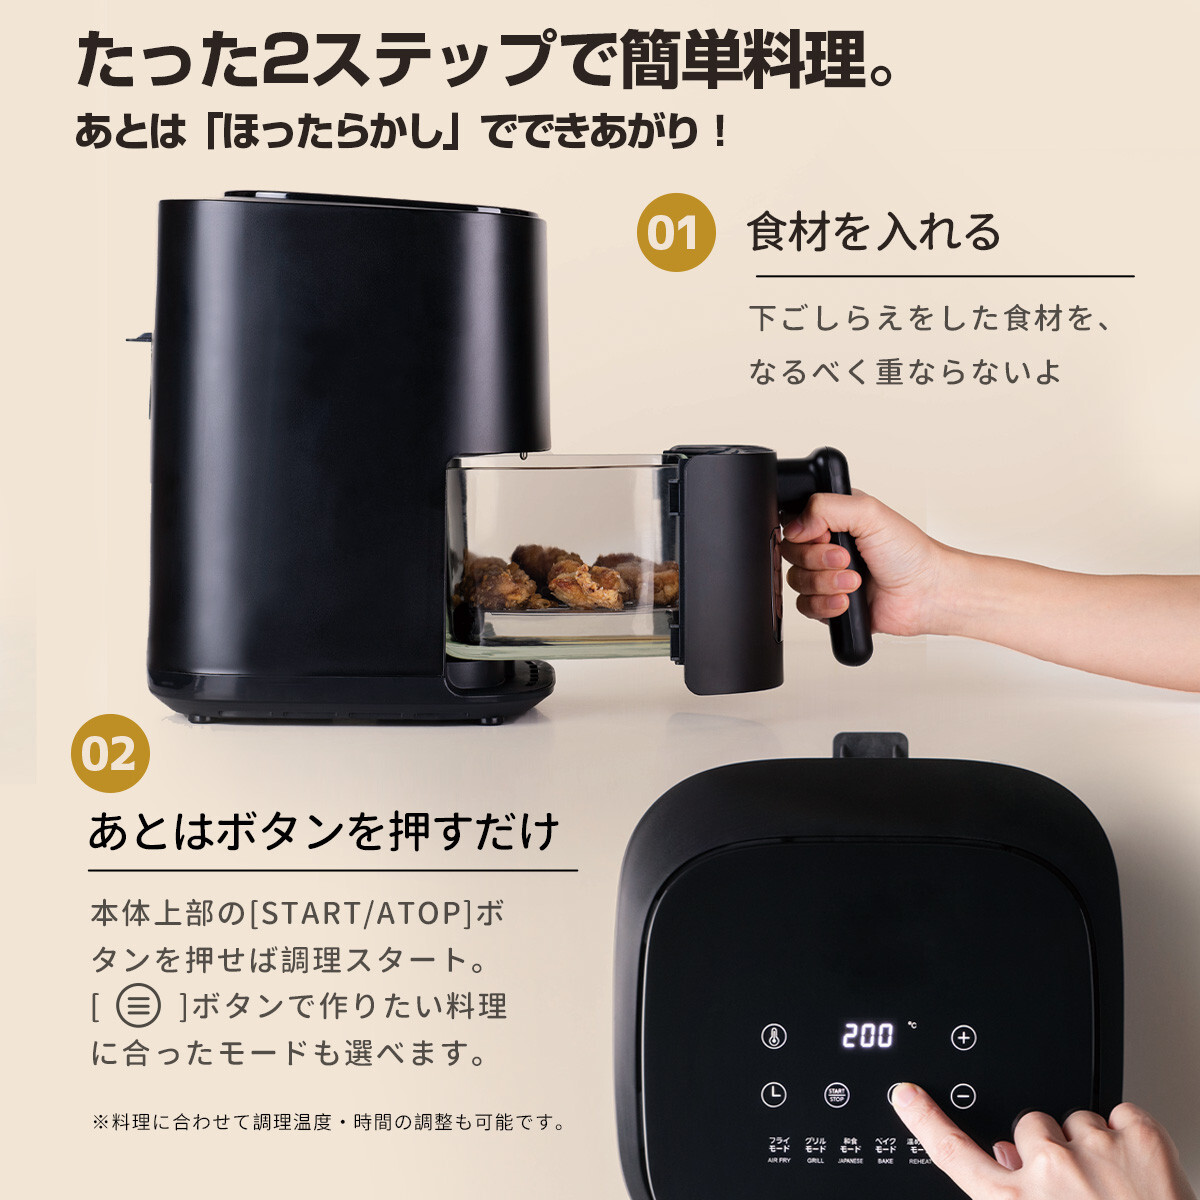 日本設計ノンフライヤー loil 和食モード 日本語タッチパネル 2.4L 電気フライヤー エアフライヤー 1台多役 タイマー温度調整 家庭用UUS007_画像5